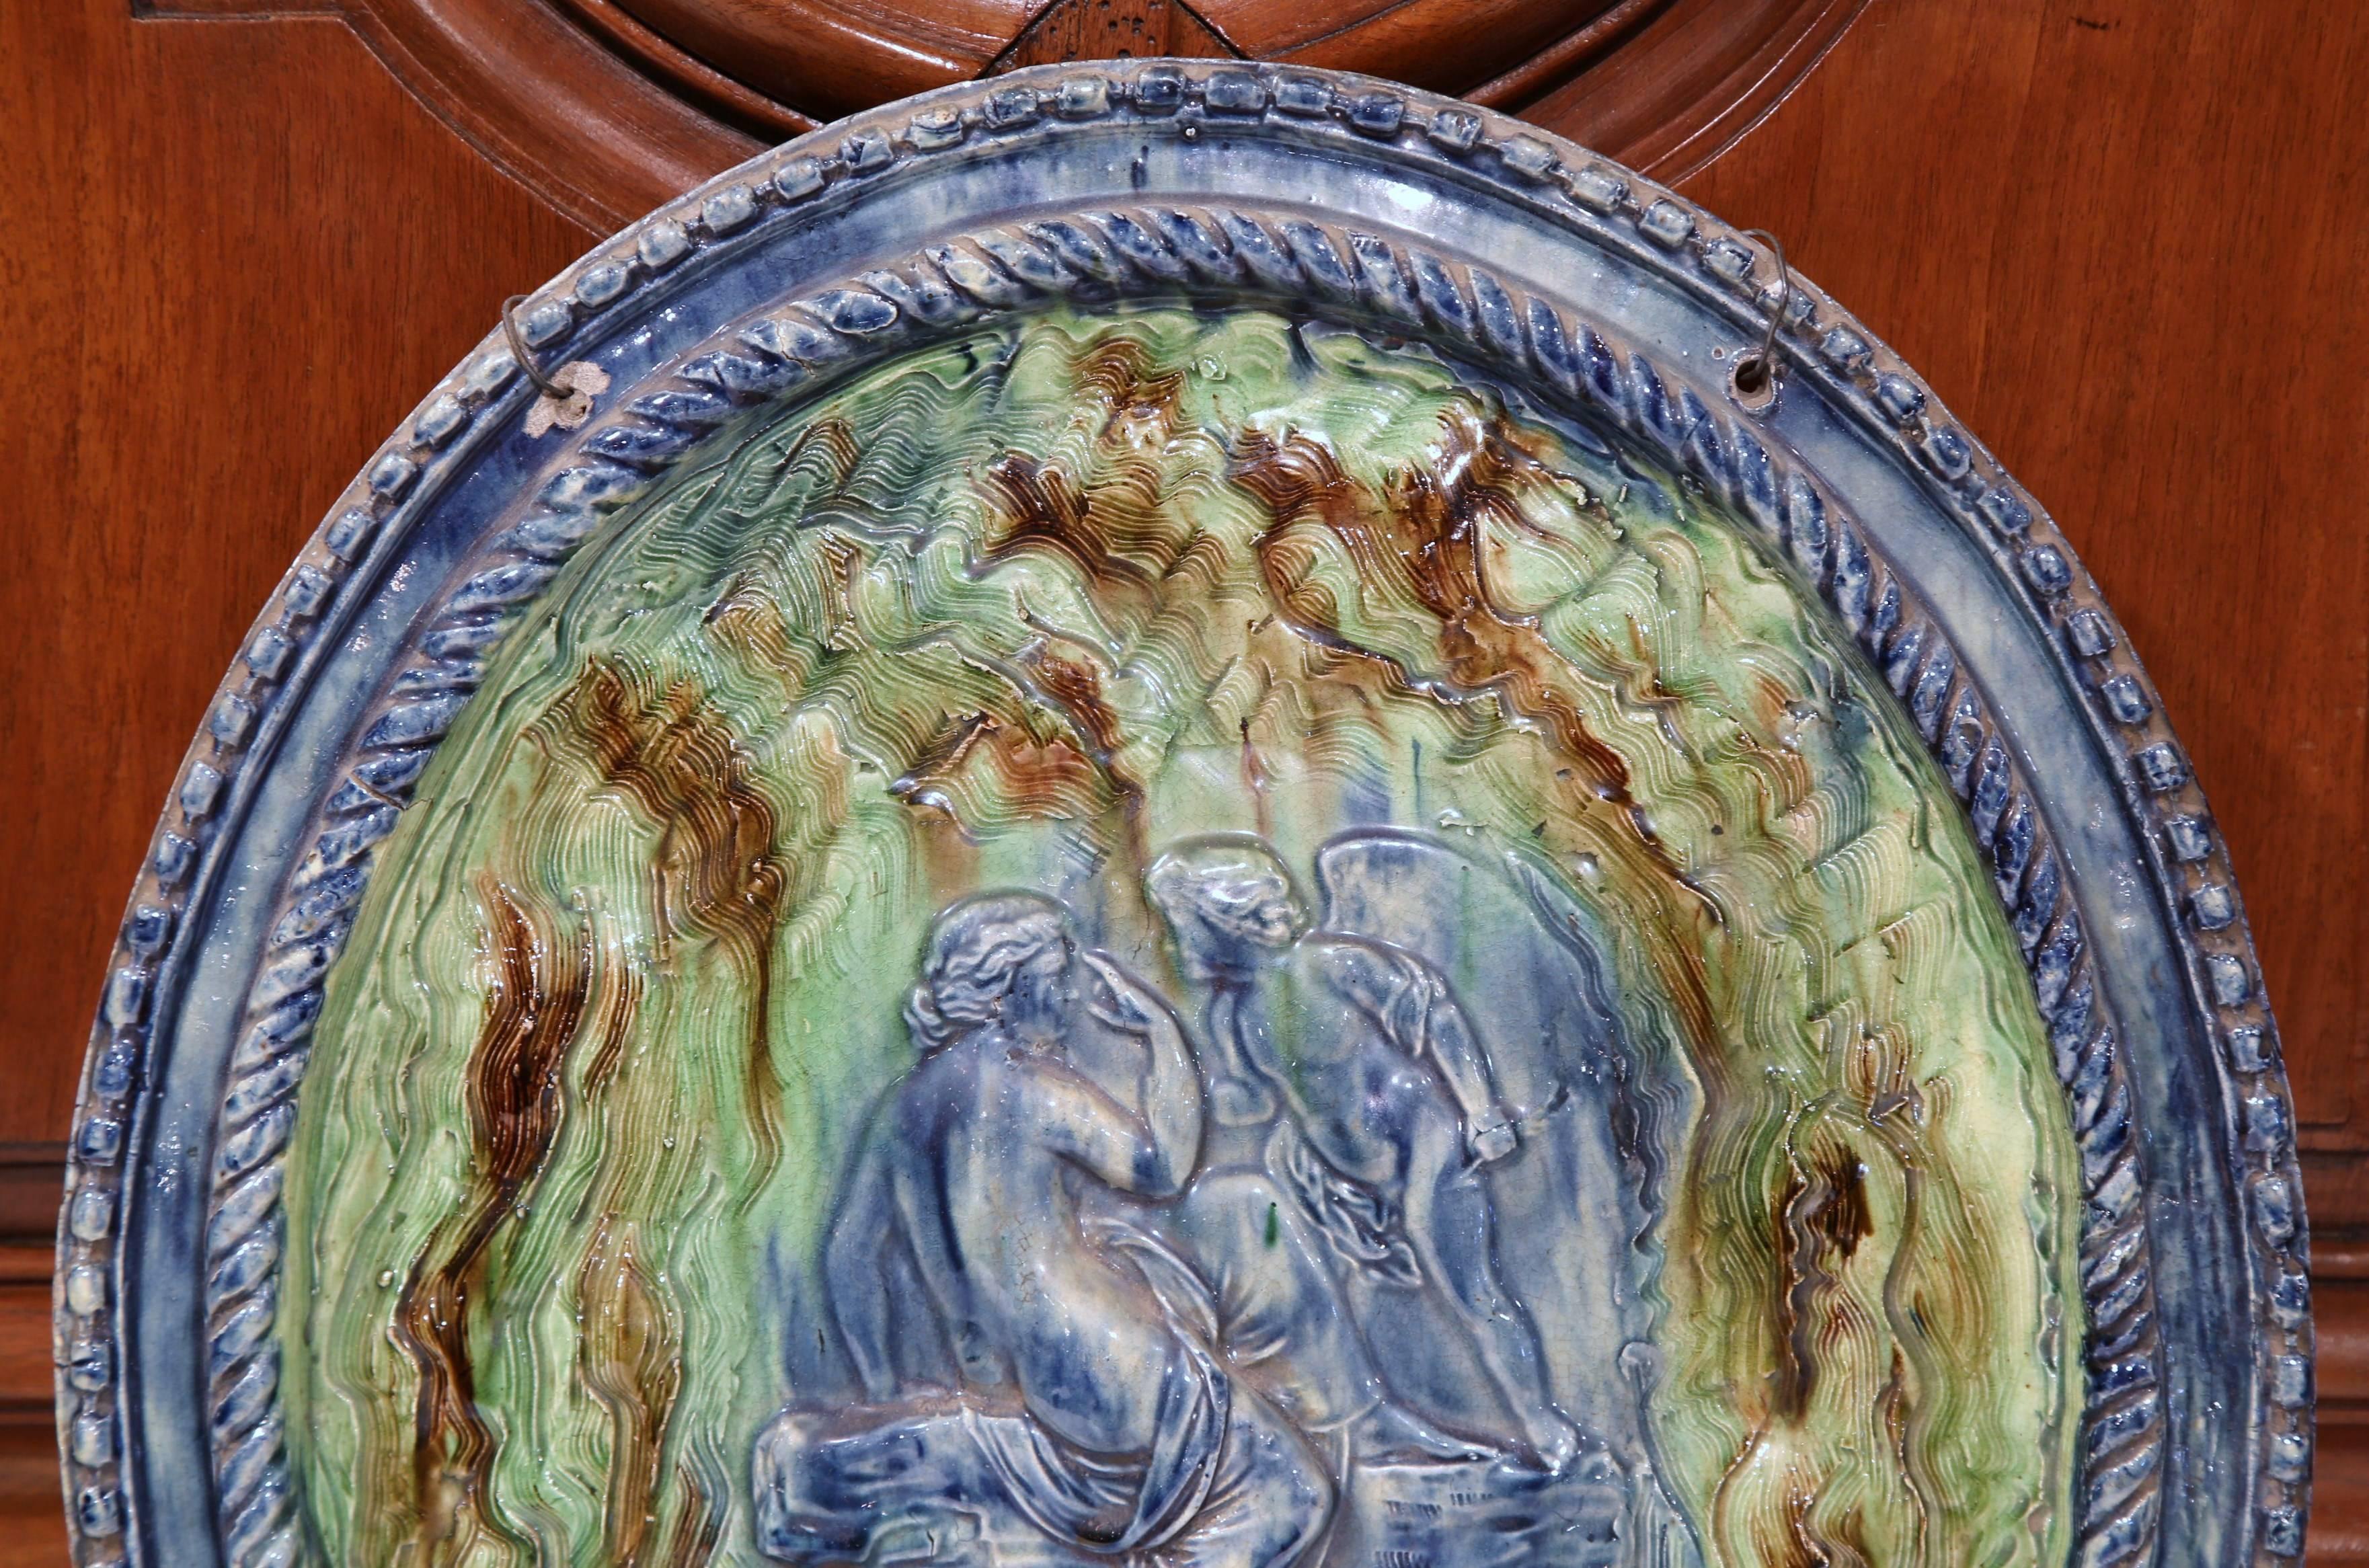 Cette plaque de suspension colorée, en terre cuite ancienne, a été sculptée à Beaune, en France, vers 1860. L'assiette ovale est peinte à la main dans une palette de vert et de violet et présente une belle texture en trompe-l'œil. Cette décoration